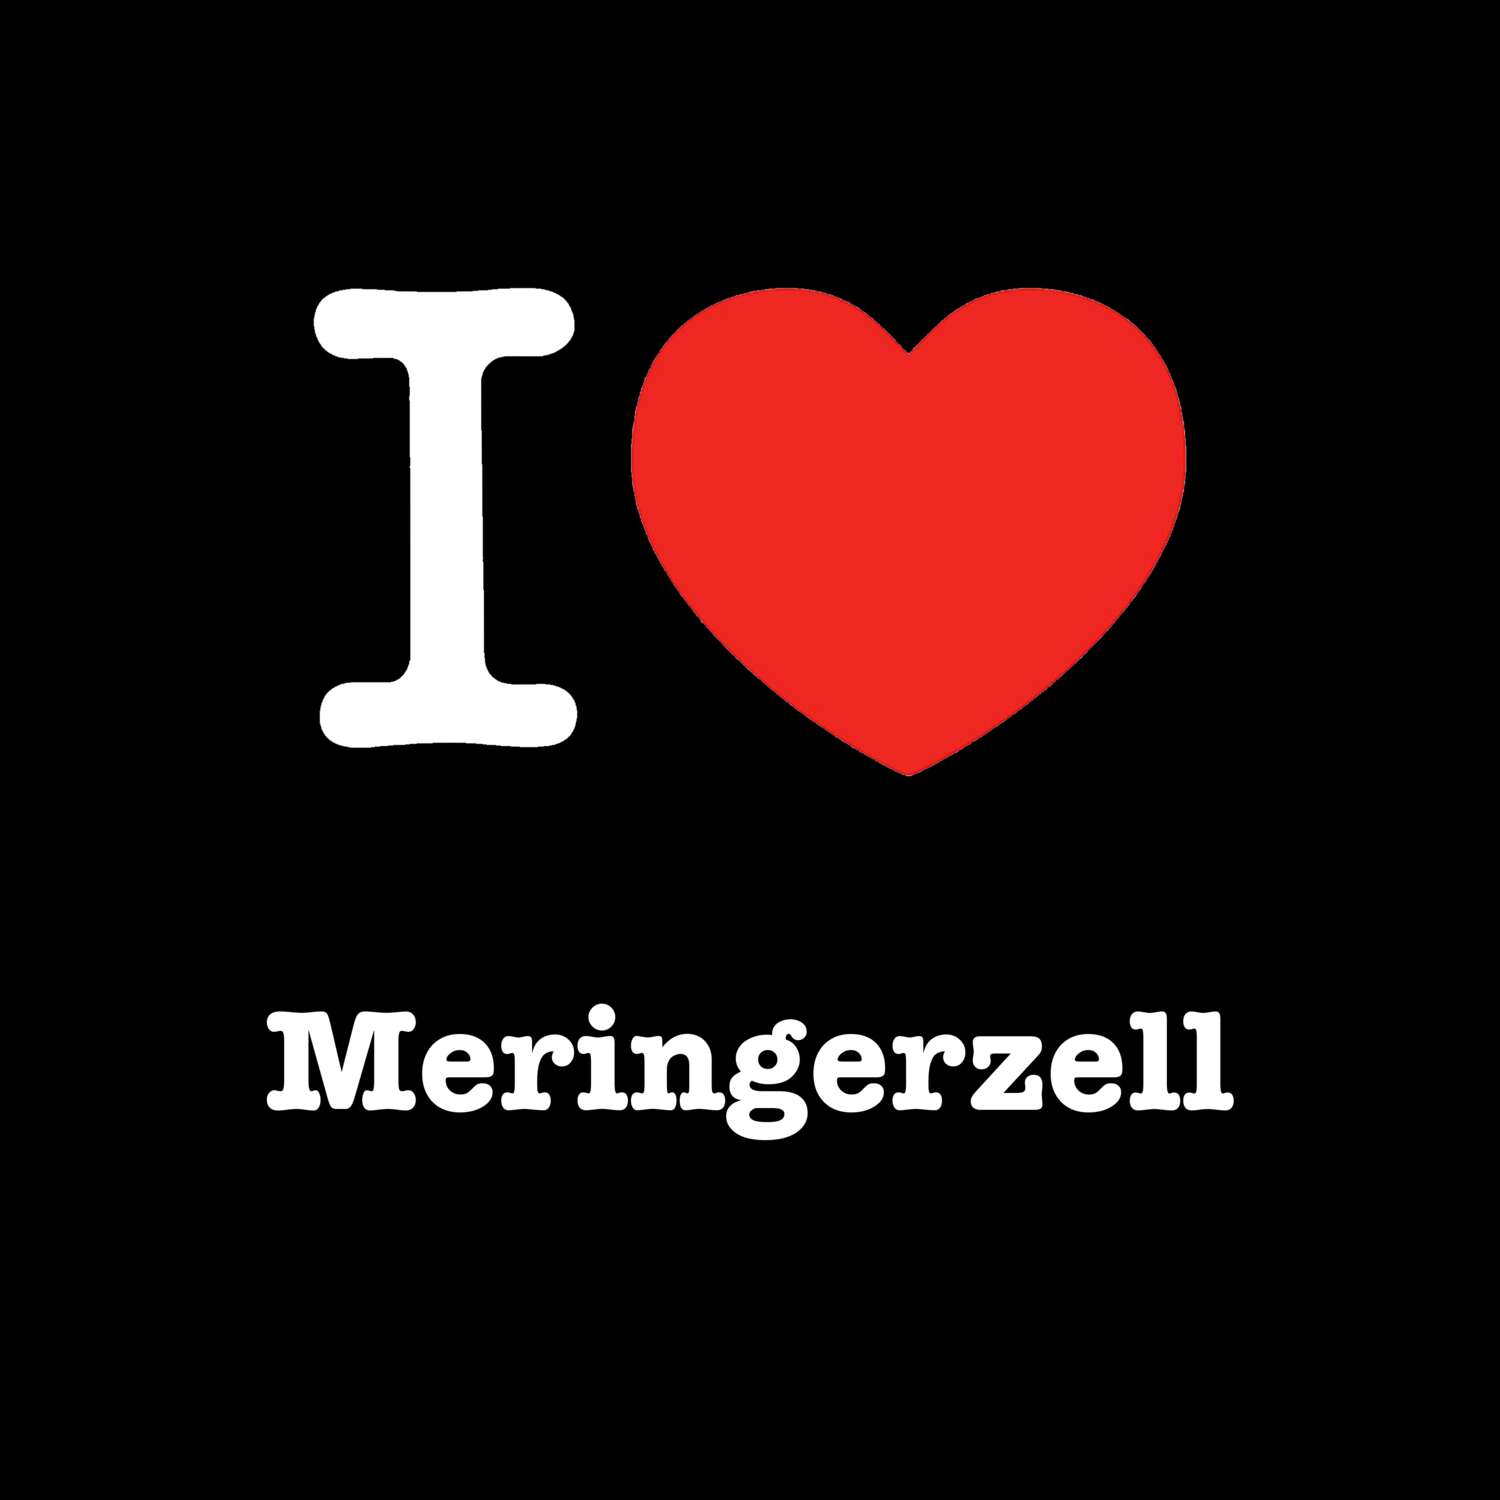 Meringerzell T-Shirt »I love«